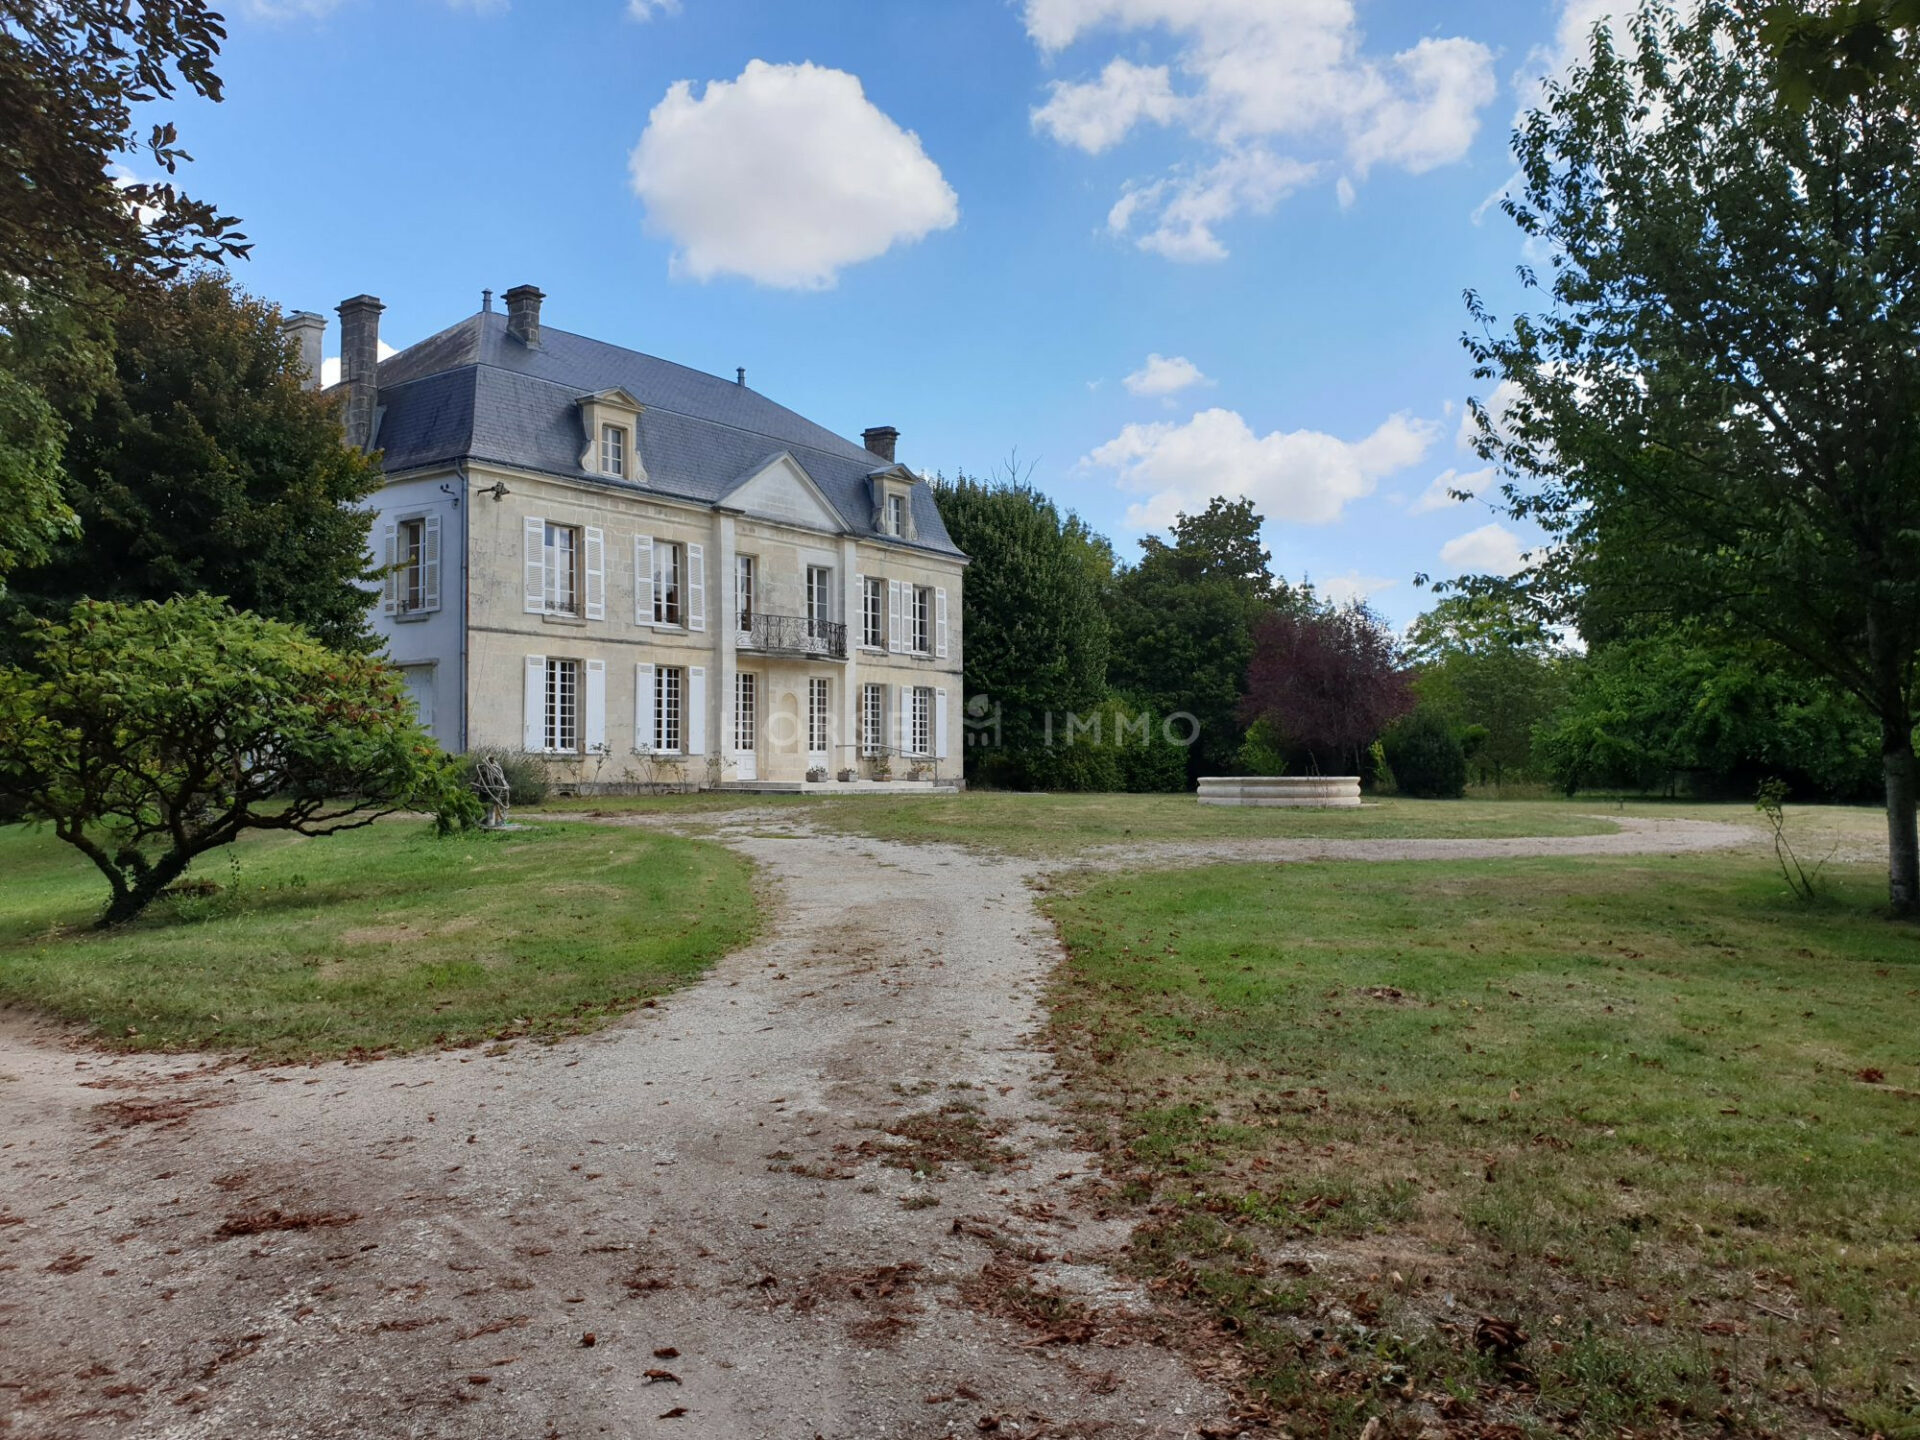 1614339527 VM1666 1 original 1920x1440 - Château et ses 2 logements sur 30ha clos de murs